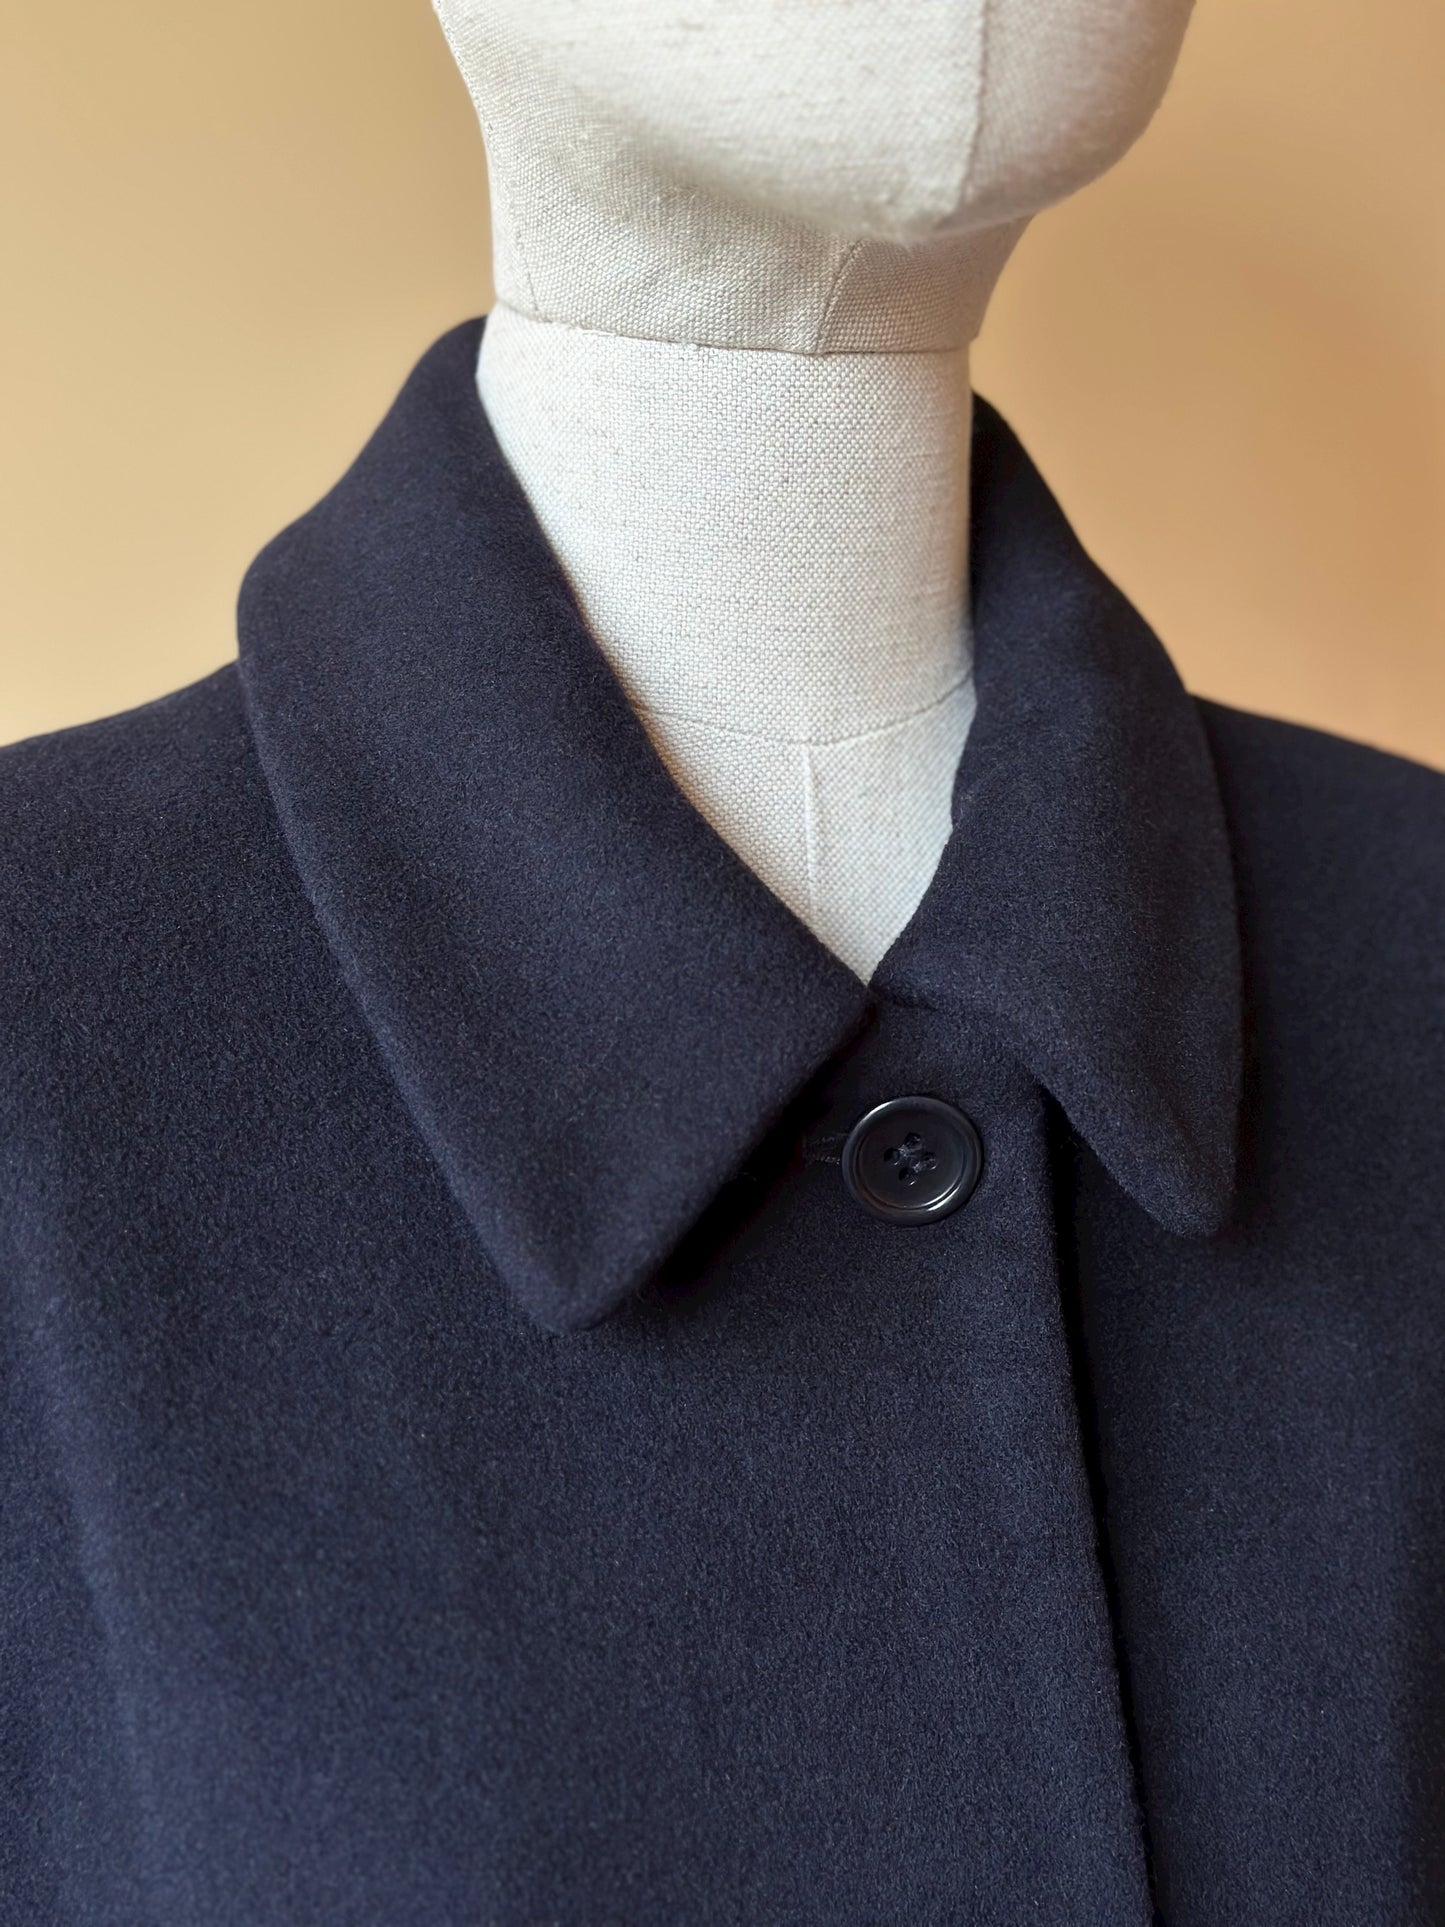 Vintage Wool & Angora Blue Coat